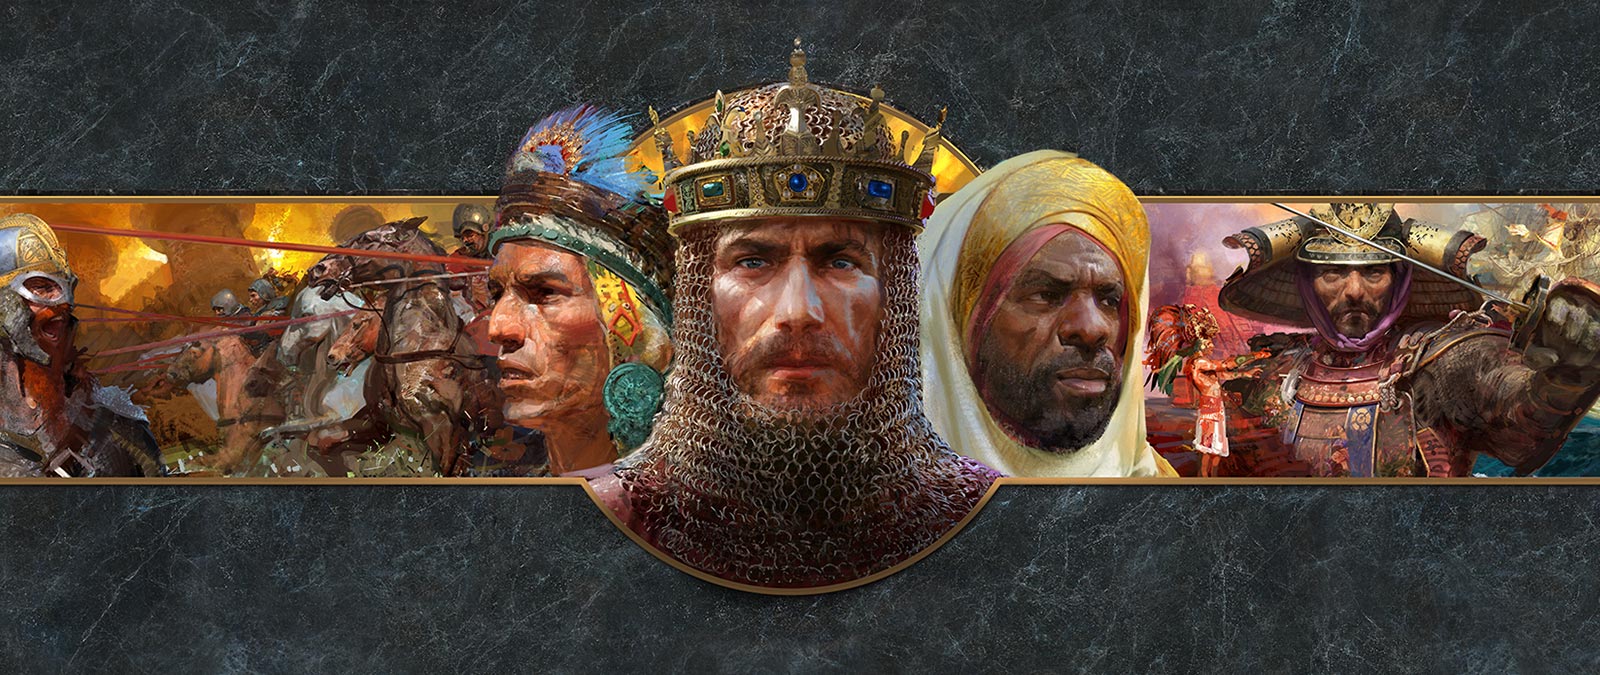 Hovedbildene av ledere fra ulike sivilisasjoner vises foran kampscener.